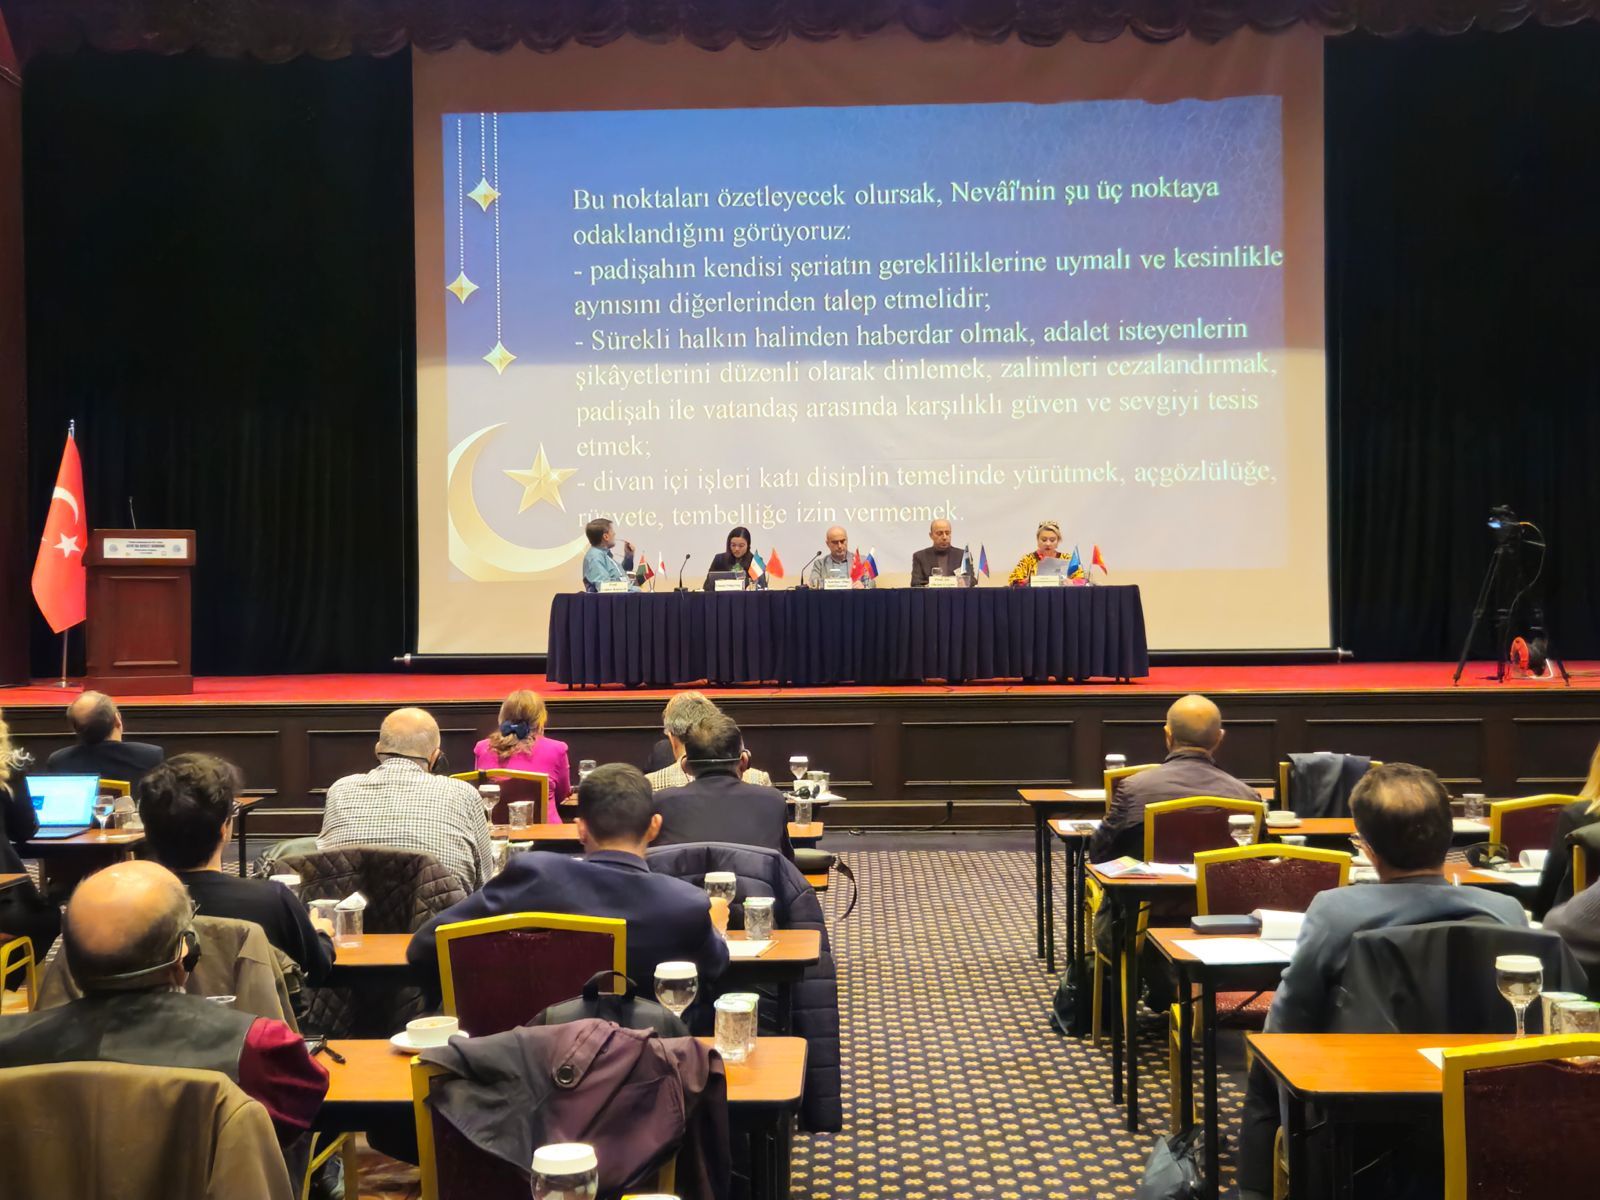 EBYÜ VE USMER Ortaklığında “Asya’da Devlet Birikimi Uluslararası Çalıştayı” Gerçekleştirildi